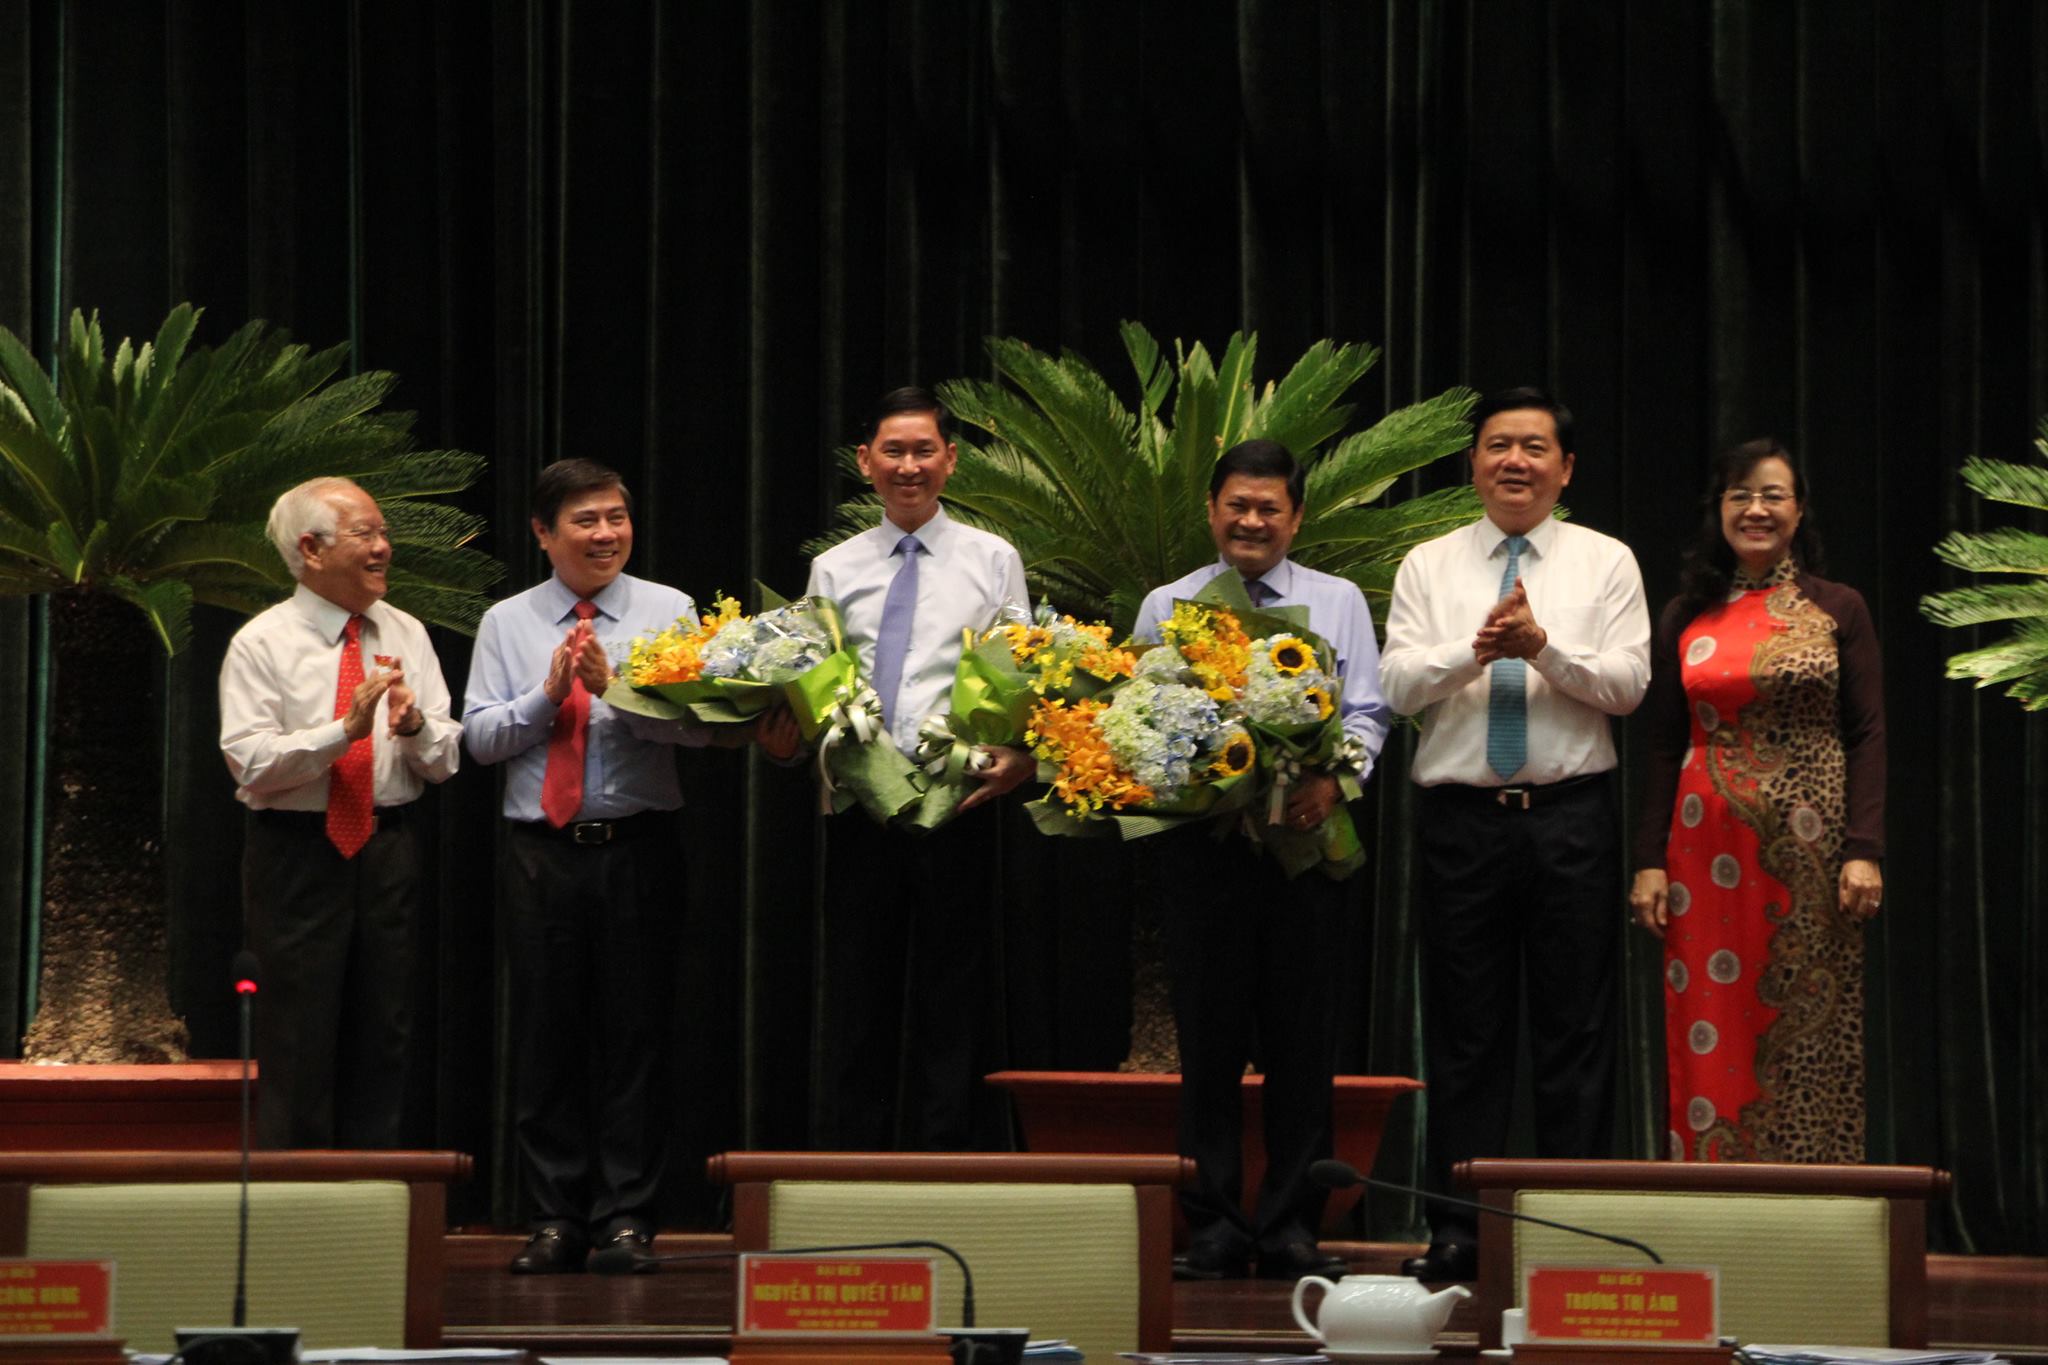 Ông Trần Vĩnh Tuyến và ông Huỳnh Cách Mạng (cầm hoa) vừa được bầu làm Phó chủ tịch UBND TP.HCM - Ảnh: Trung Hiếu